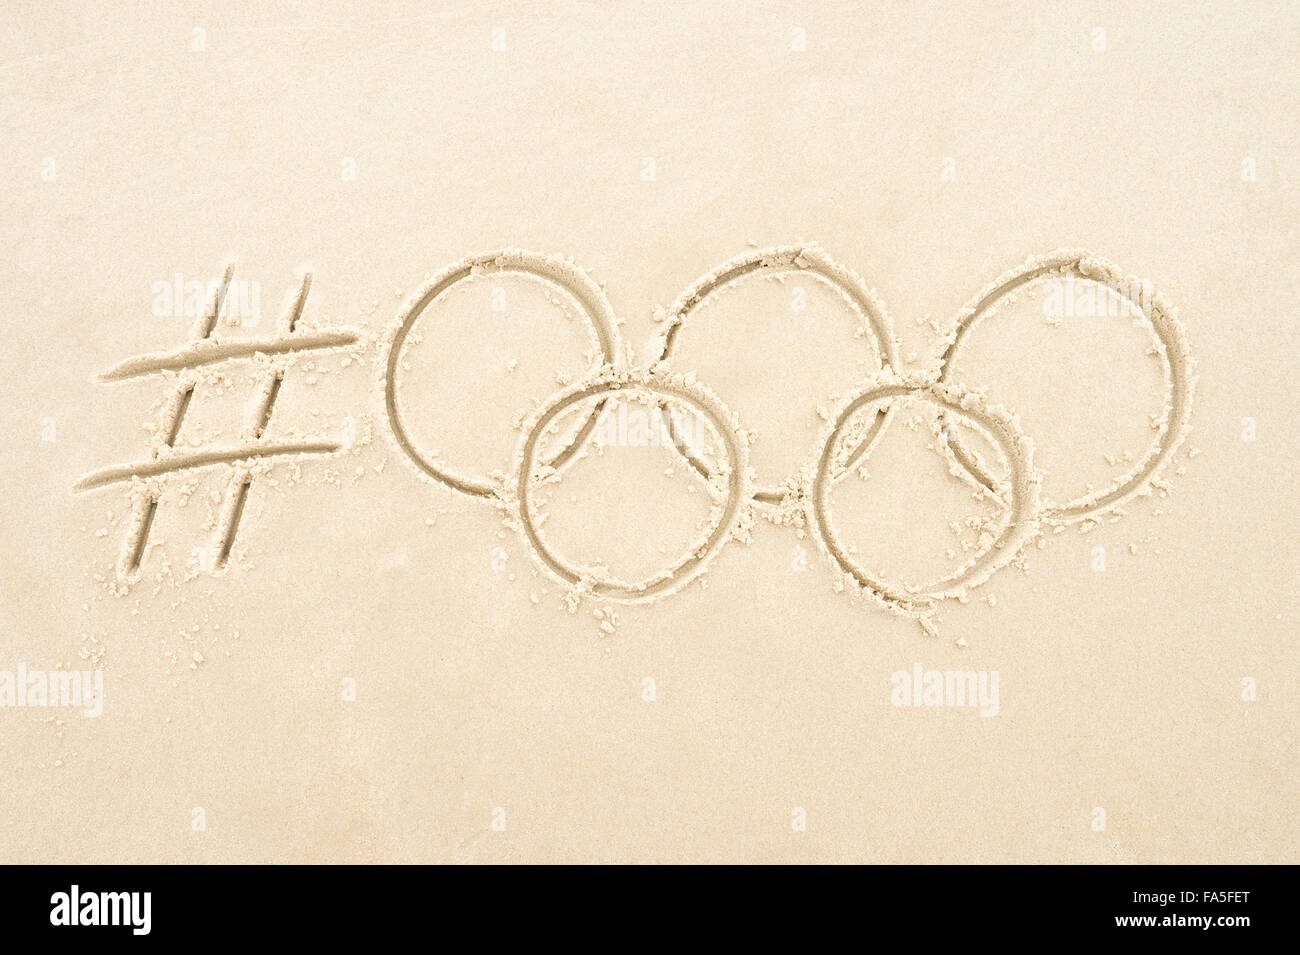 Río de Janeiro, Brasil - 10 de noviembre de 2015: Mensaje de social media hashtag manuscrita para Río 2016 con anillos en la arena. Foto de stock